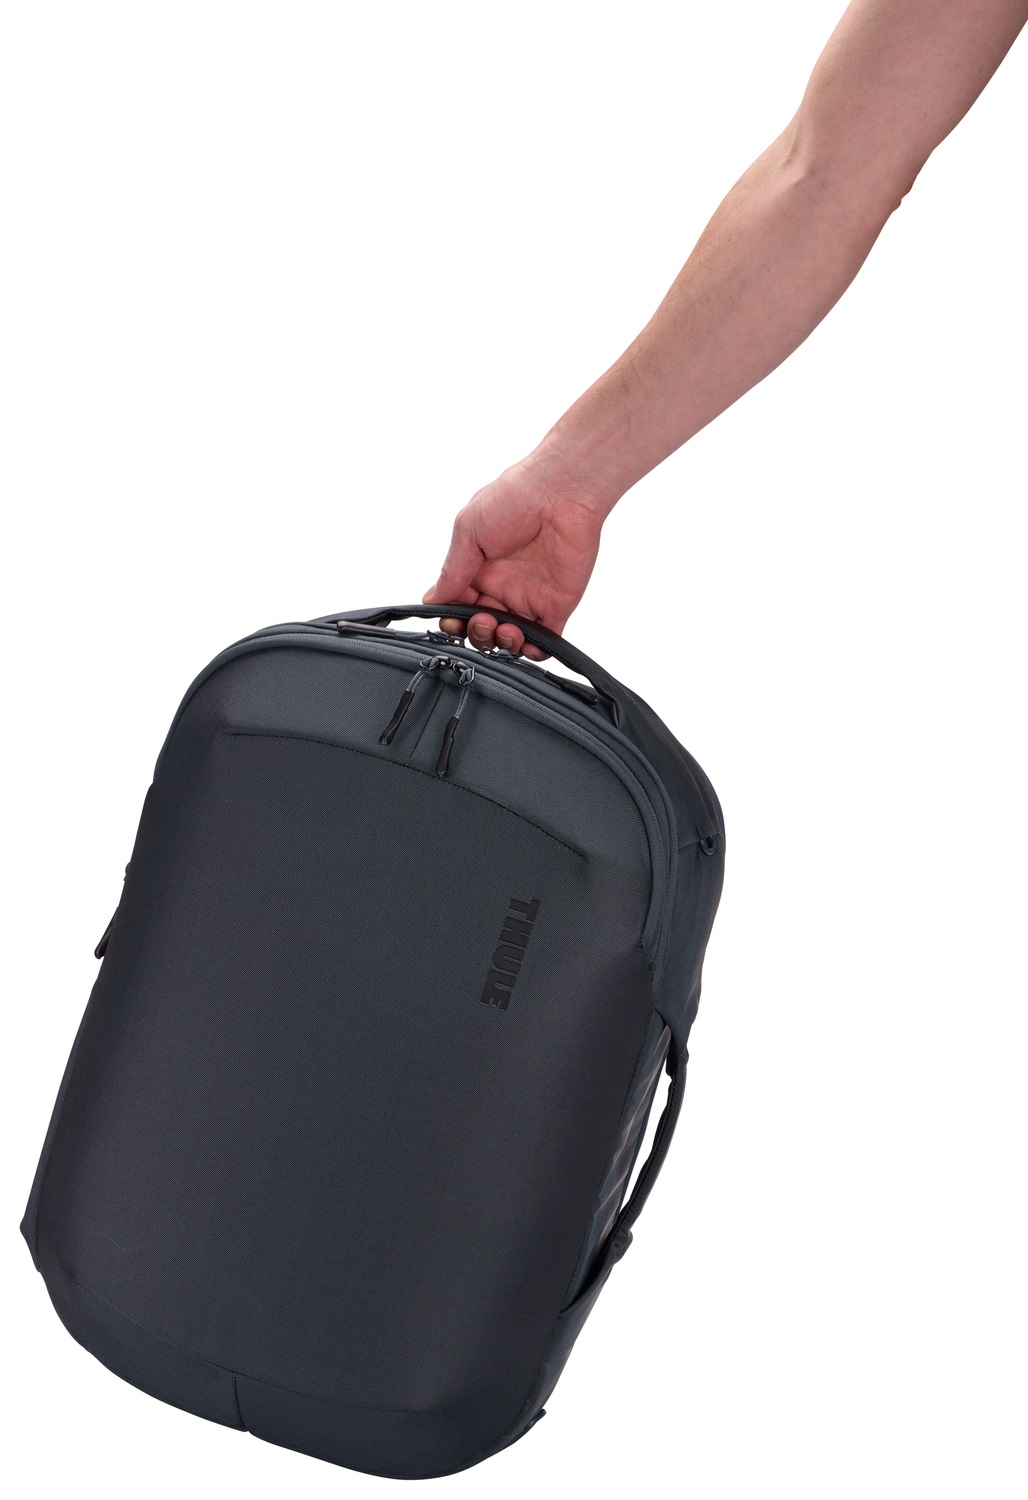 Thule Subterra 2 promjenjiva torba 40L usklađena sa standardima za unos ručne prtljage u zrakoplov - plava